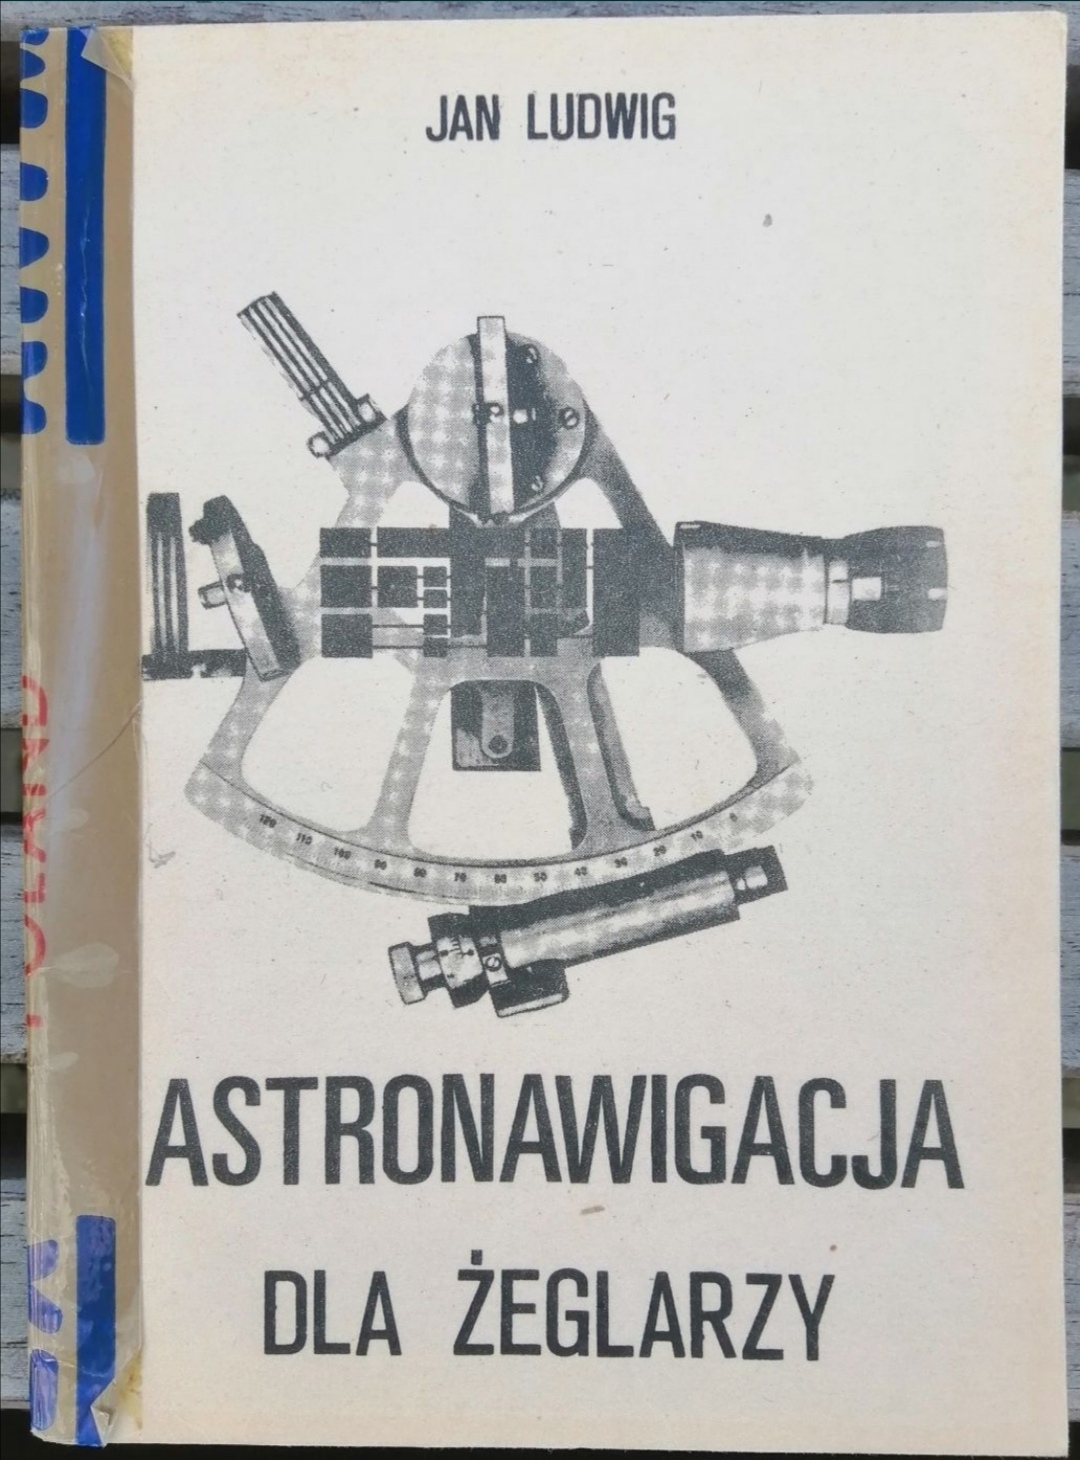 Astronawigacja dla żeglarzy – Jan Ludwig